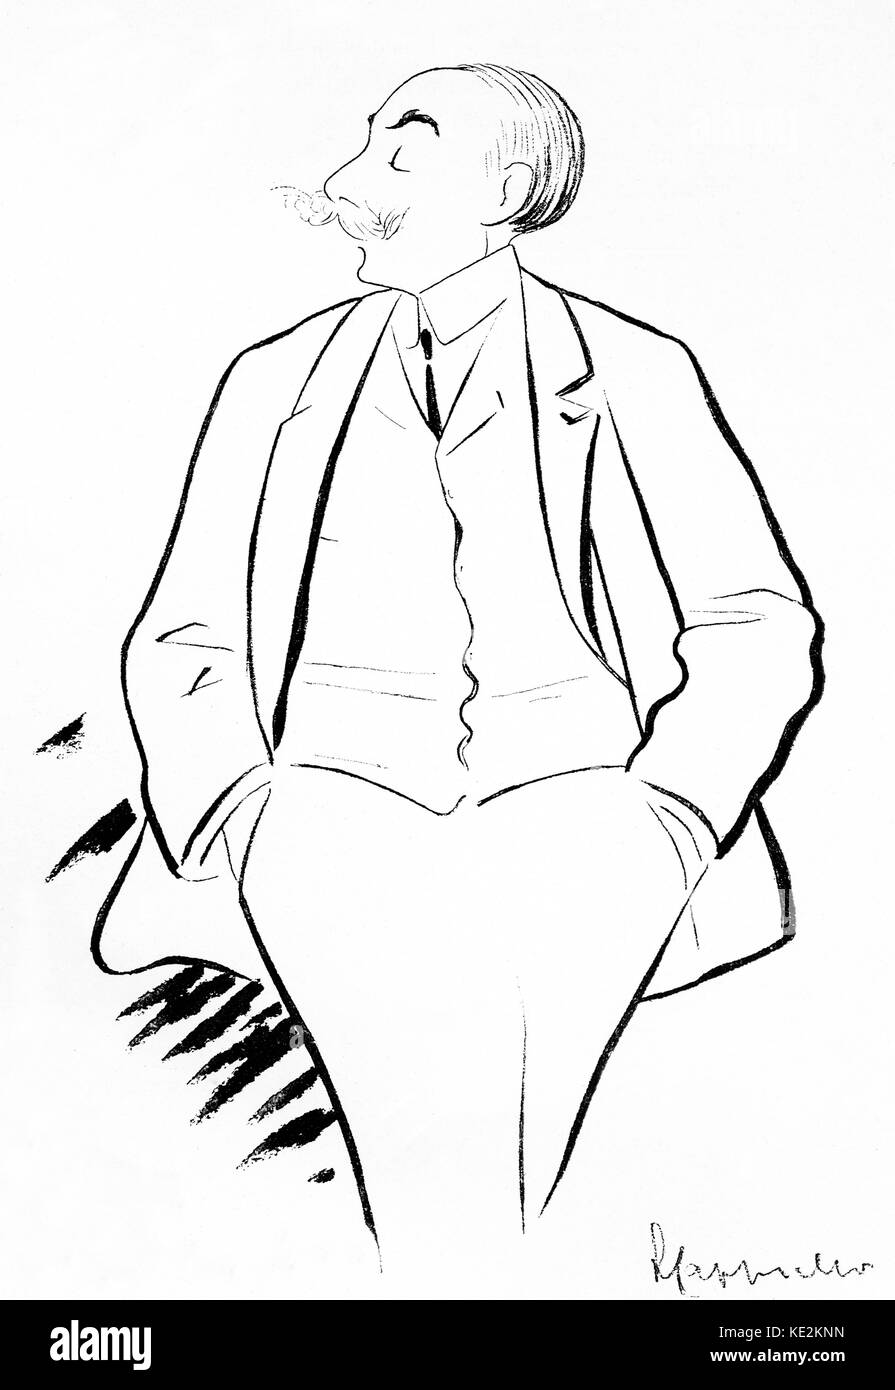 André Charles Prosper Messager - Ritratto del musicista francese, 30 Dicembre 1853 - 1929. Illustrazione dell'artista italiano Leonetto Cappiello, 1875-1942. Foto Stock